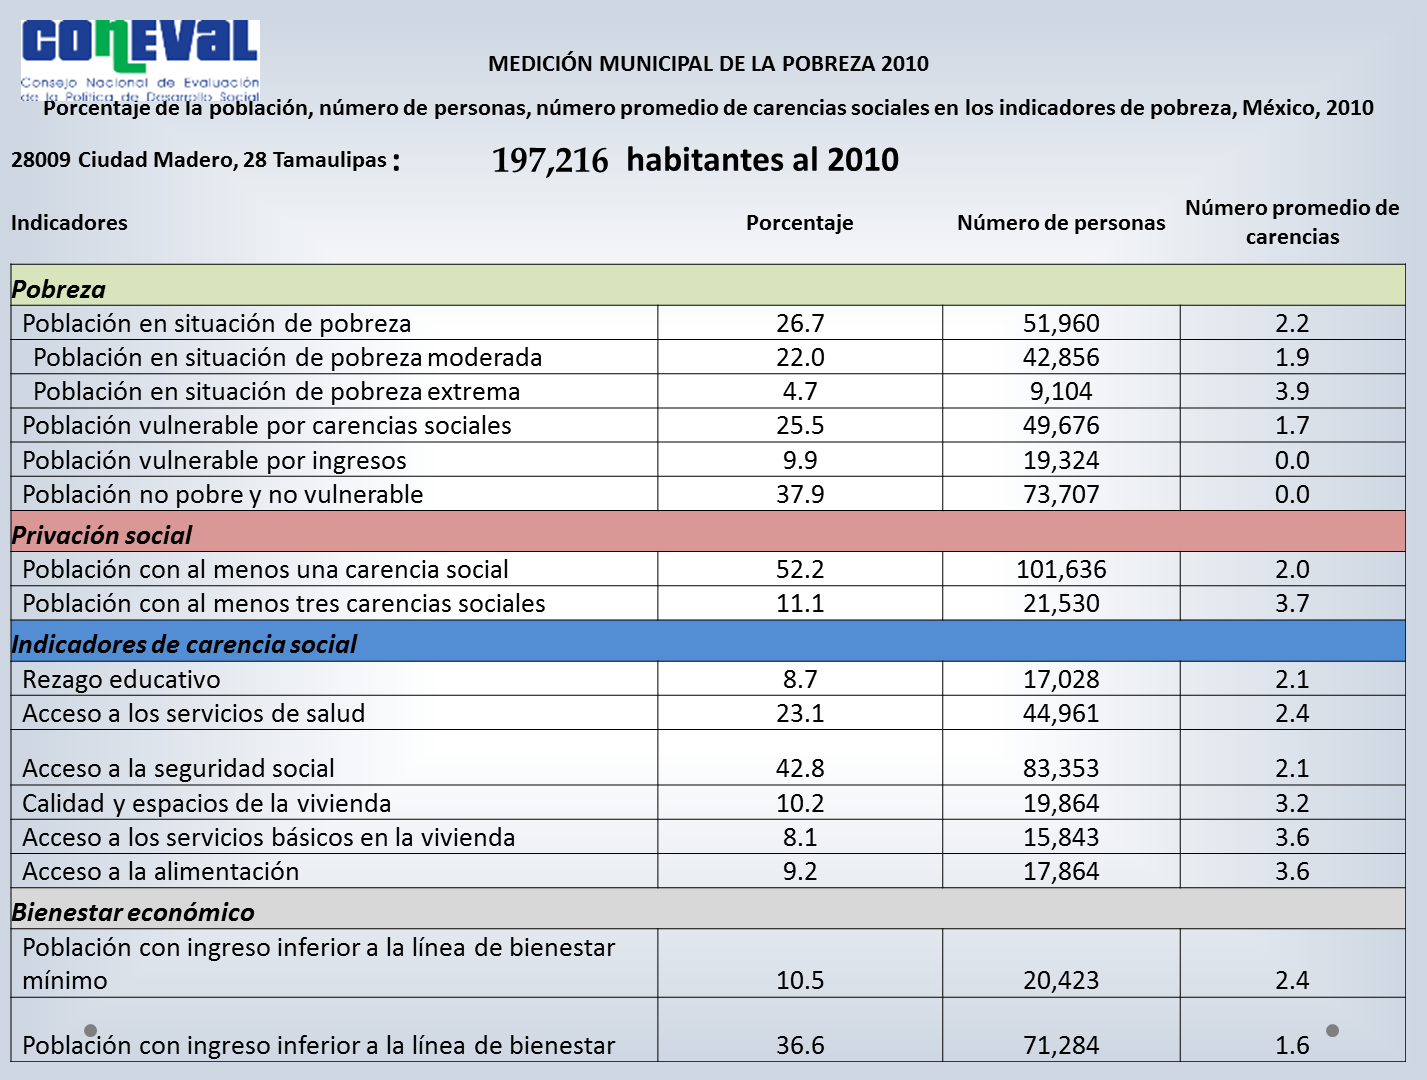 De acuerdo al Consejo Nacional de Evaluación del Política de Desarrollo Social (CONEVAL, 2010) los indicadores de pobreza del Municipio de Cd. Madero muestran que un 26.